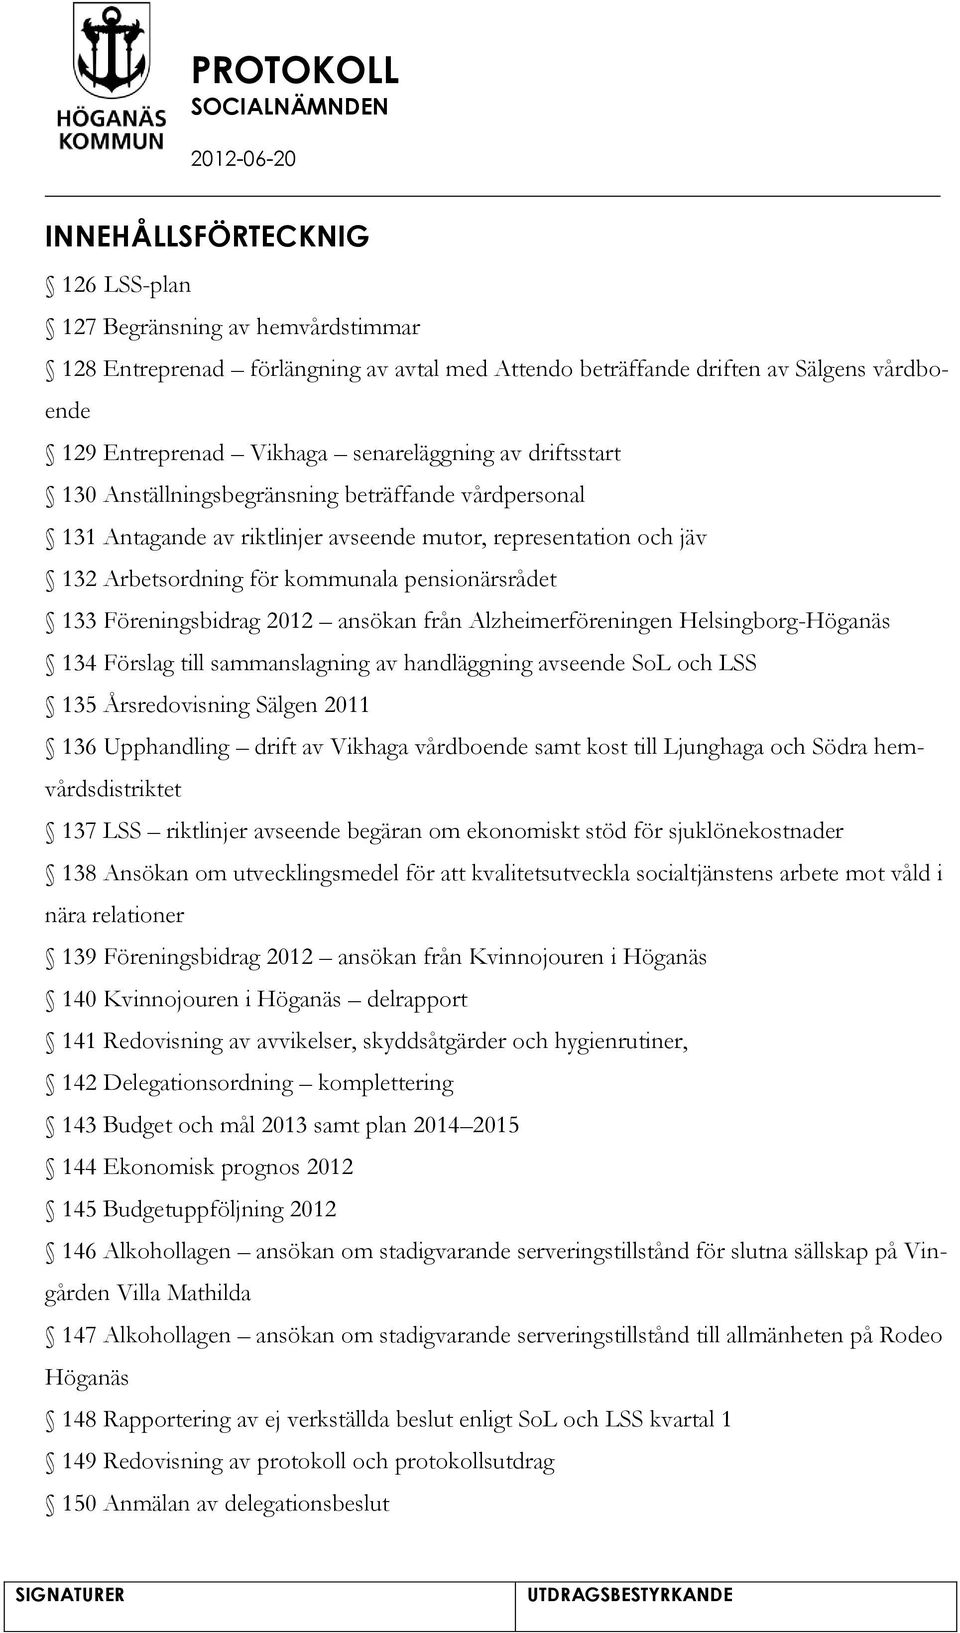 2012 ansökan från Alzheimerföreningen Helsingborg-Höganäs 134 Förslag till sammanslagning av handläggning avseende SoL och LSS 135 Årsredovisning Sälgen 2011 136 Upphandling drift av Vikhaga